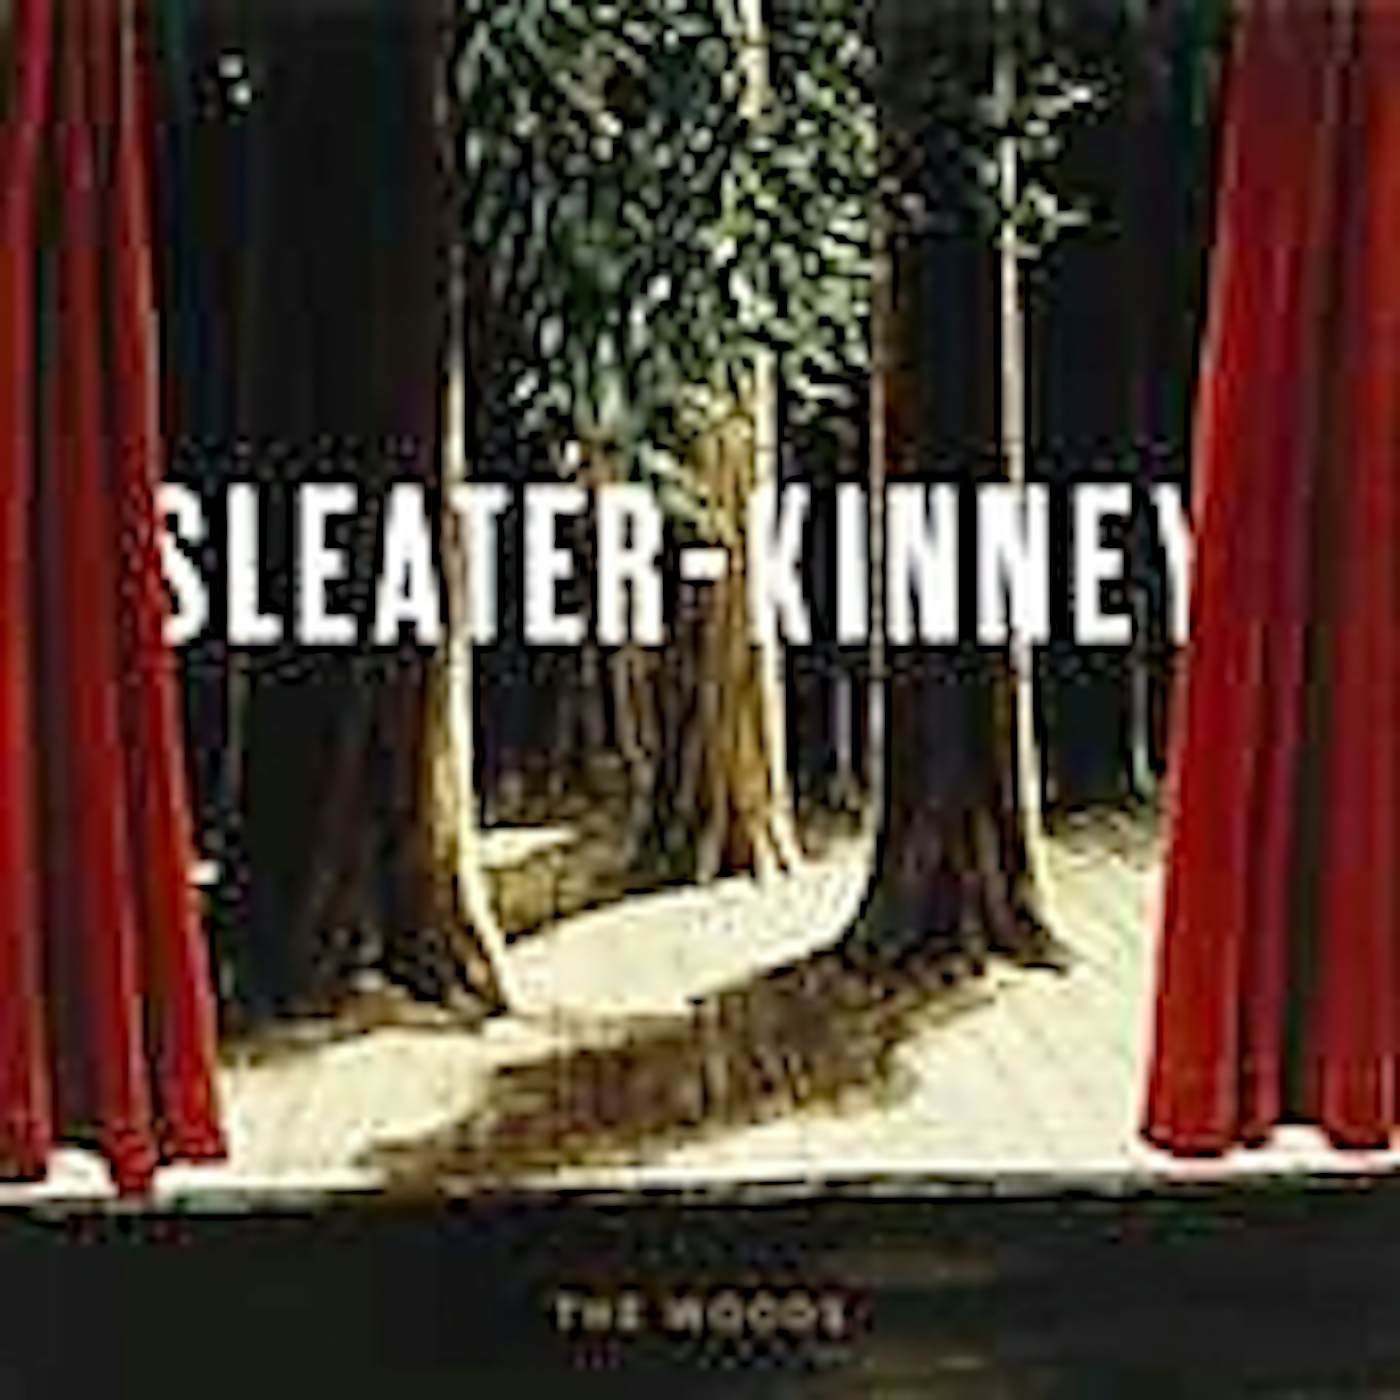 Sleater-Kinney WOODS CD